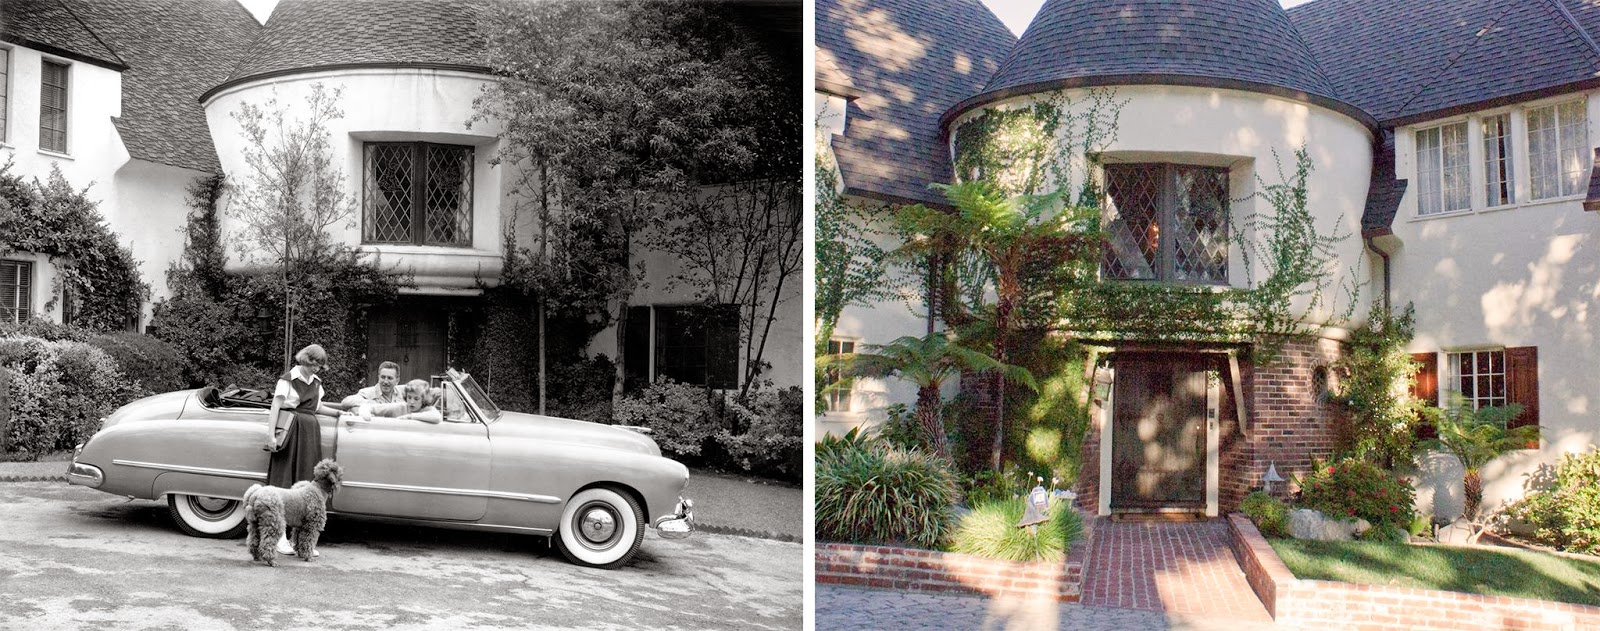 Disney Avenue: A Look Inside Walt Disney's Home